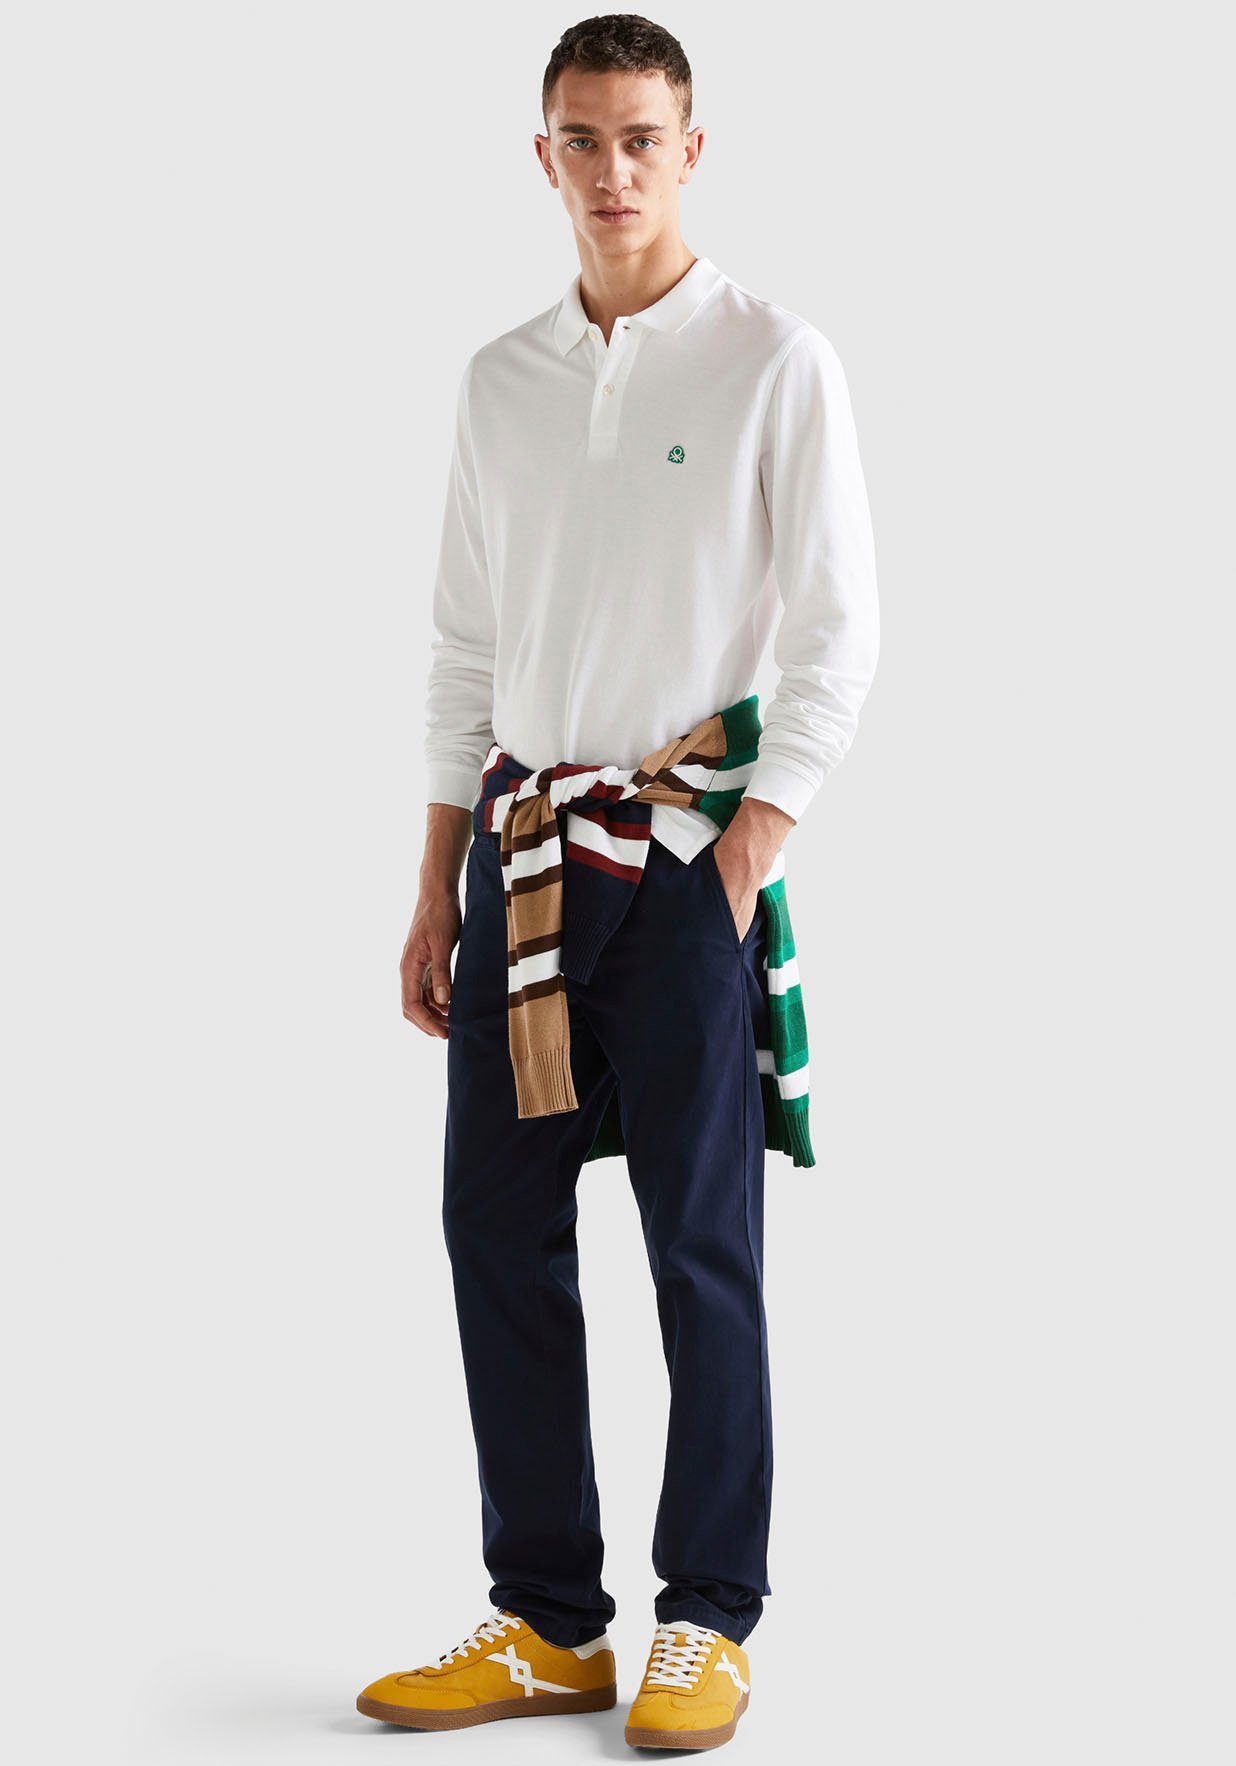 United Colors of Benetton kleinen weiß Schlitzen Langarm-Poloshirt seitlichen, mit